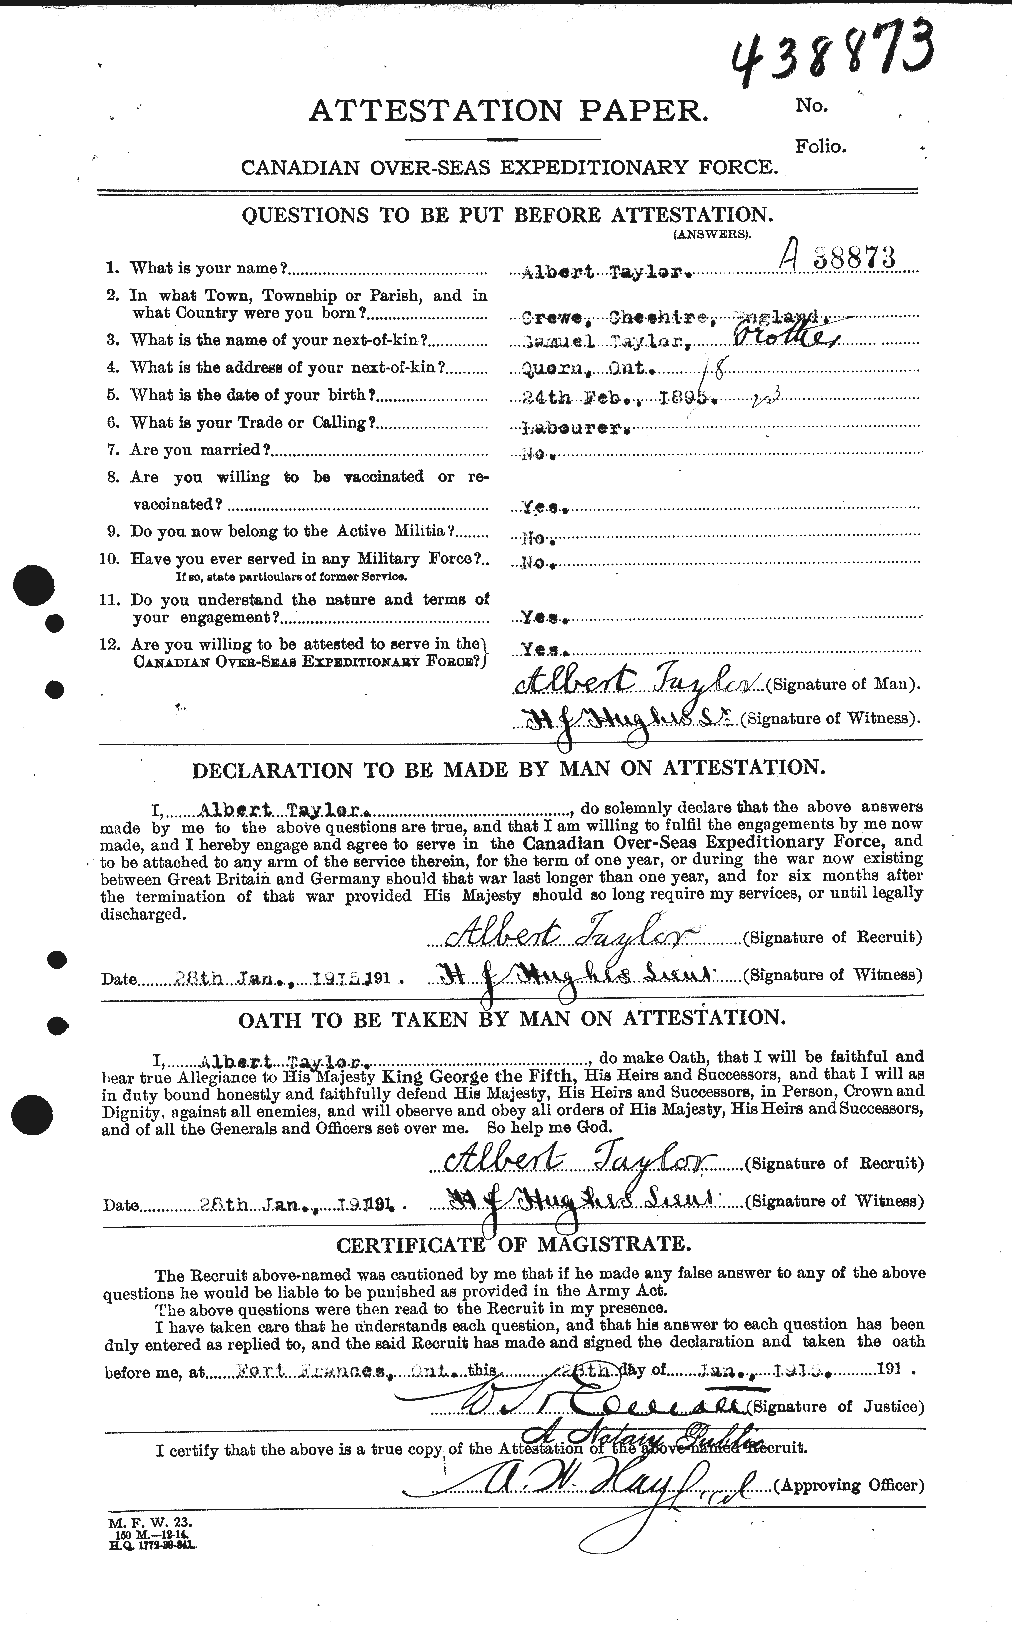 Dossiers du Personnel de la Première Guerre mondiale - CEC 626091a